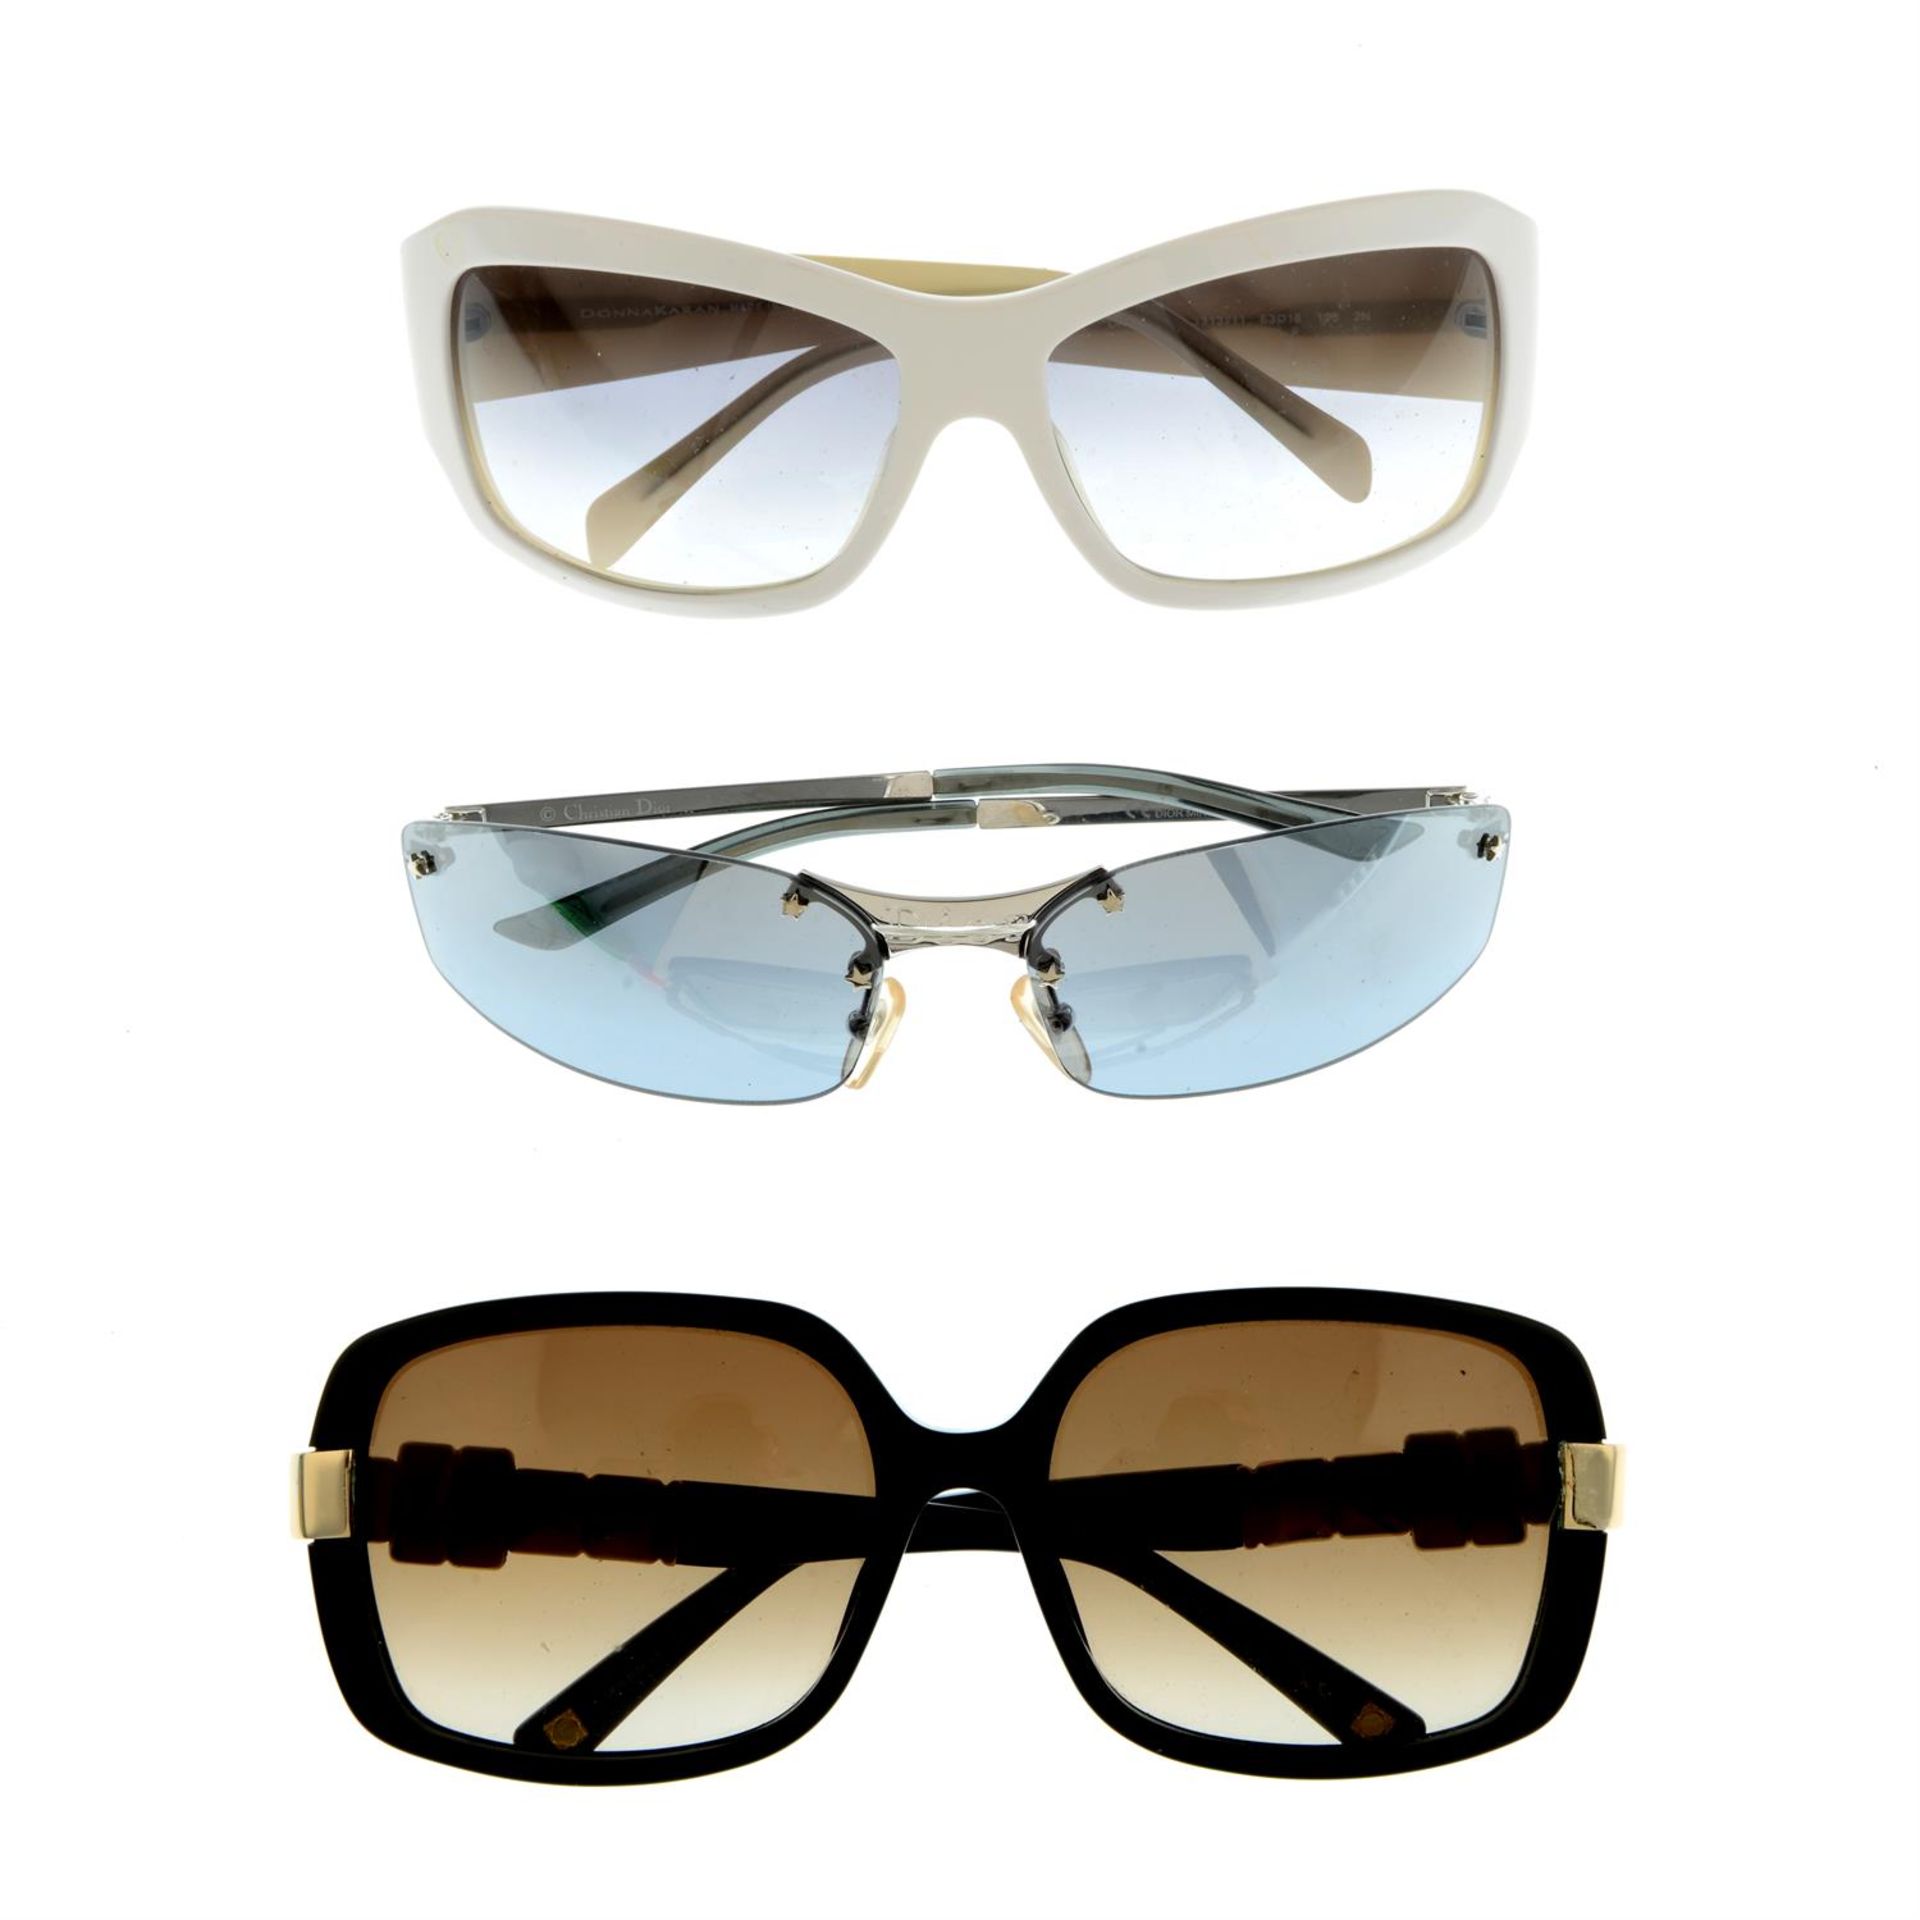 Three pairs of designer sunglasses.